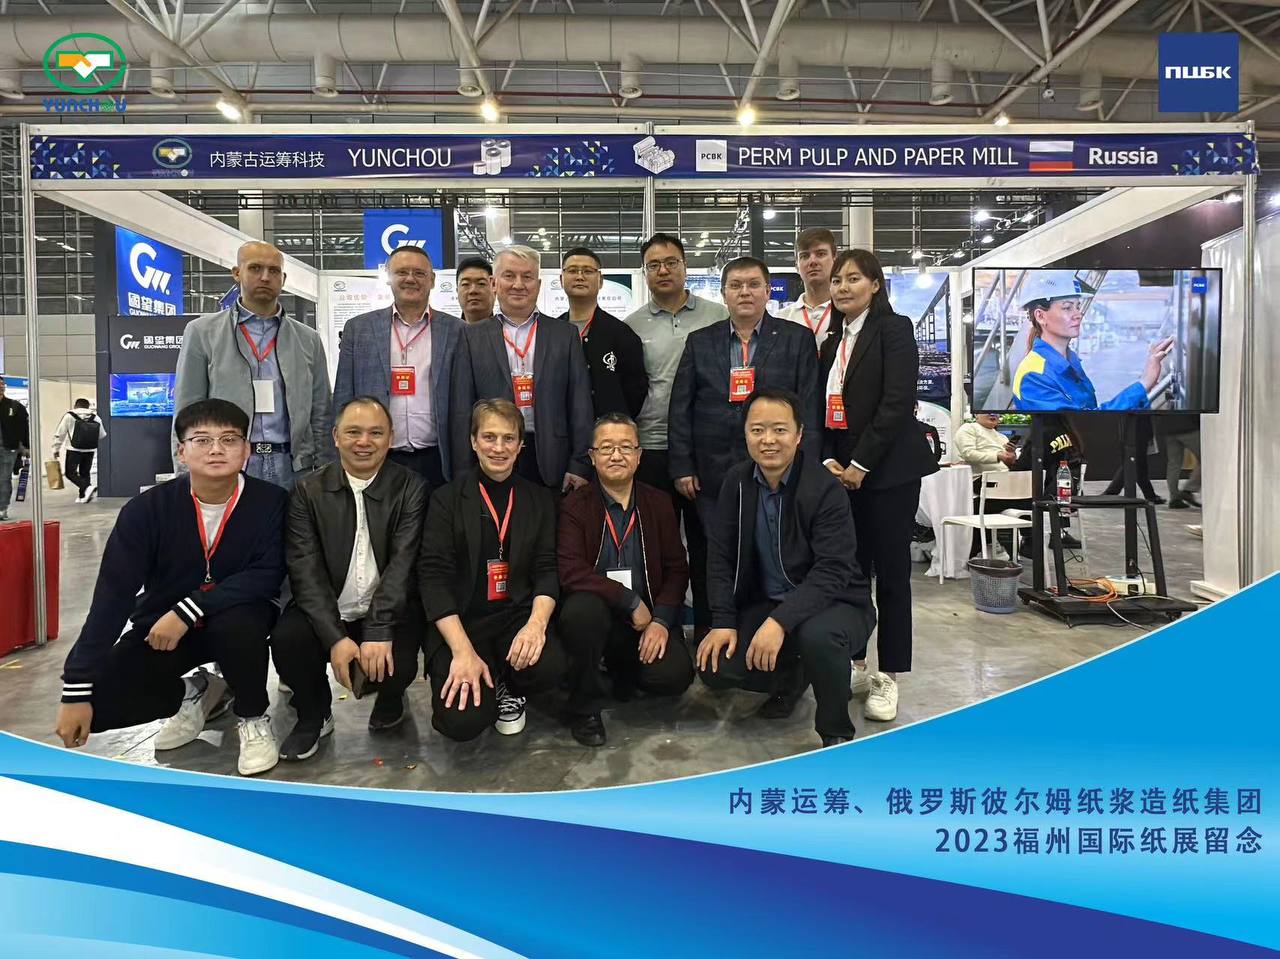 Продукцию ПЦБК высоко оценили на отраслевой выставке в Китае